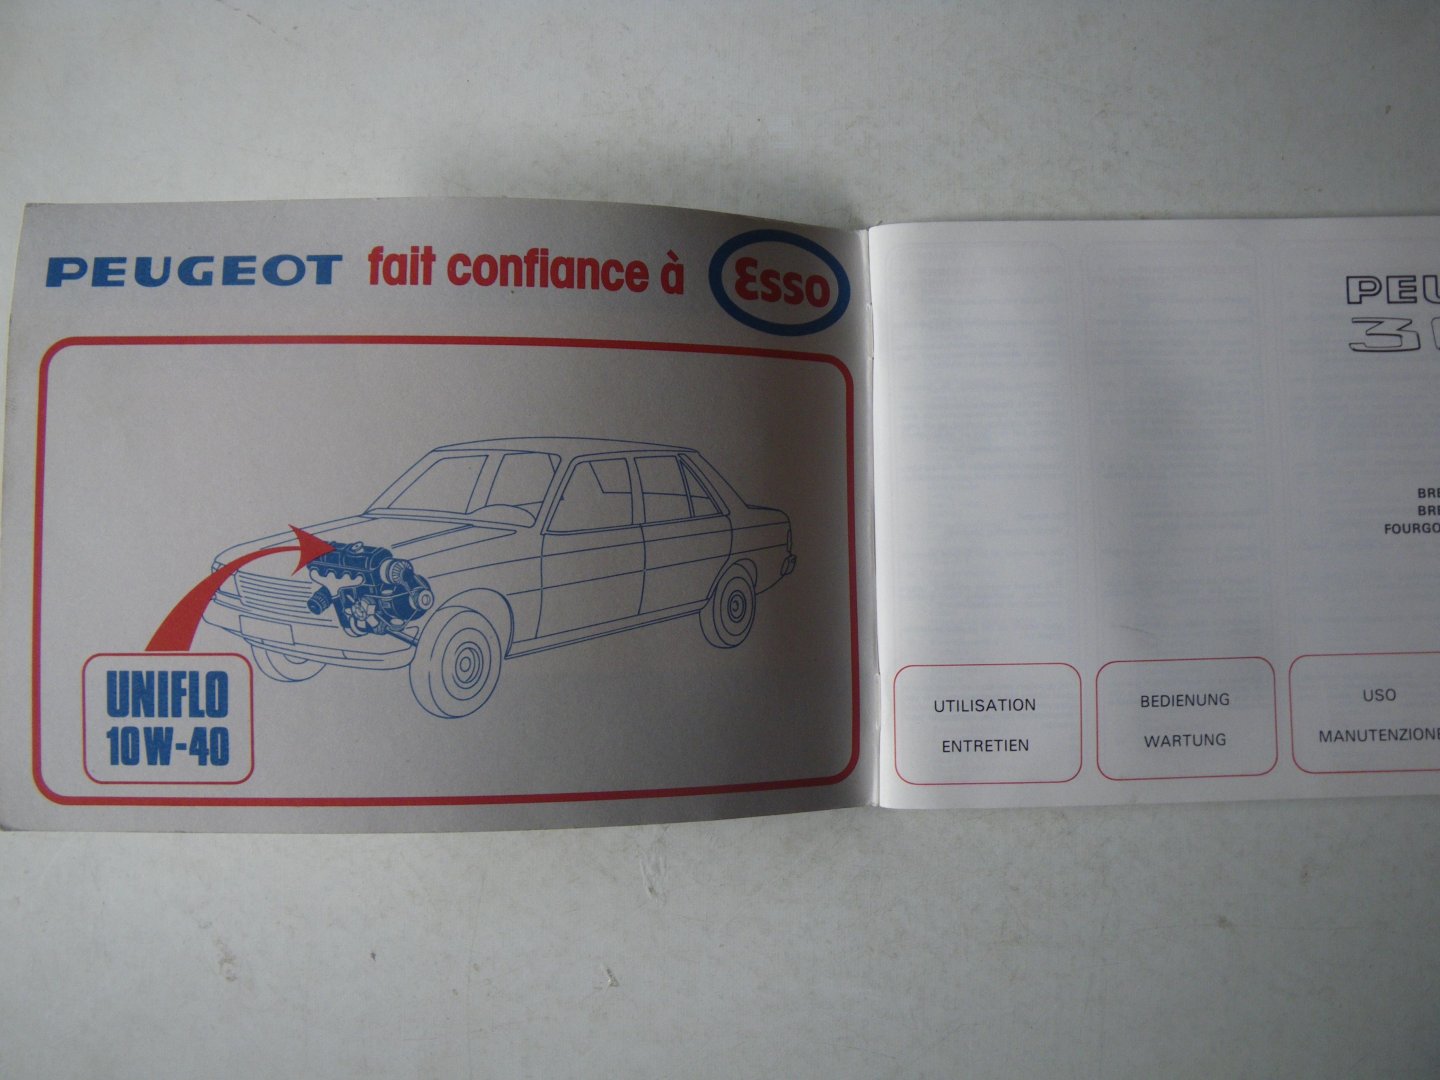 peugeot - Peugeot 305, 581 M01 / 305 GL, 305 GR, 305 SR, 581M11 / 305 GT, 581 M56 / Break GL en SR, 581 E11 / Break-service, 581 U11